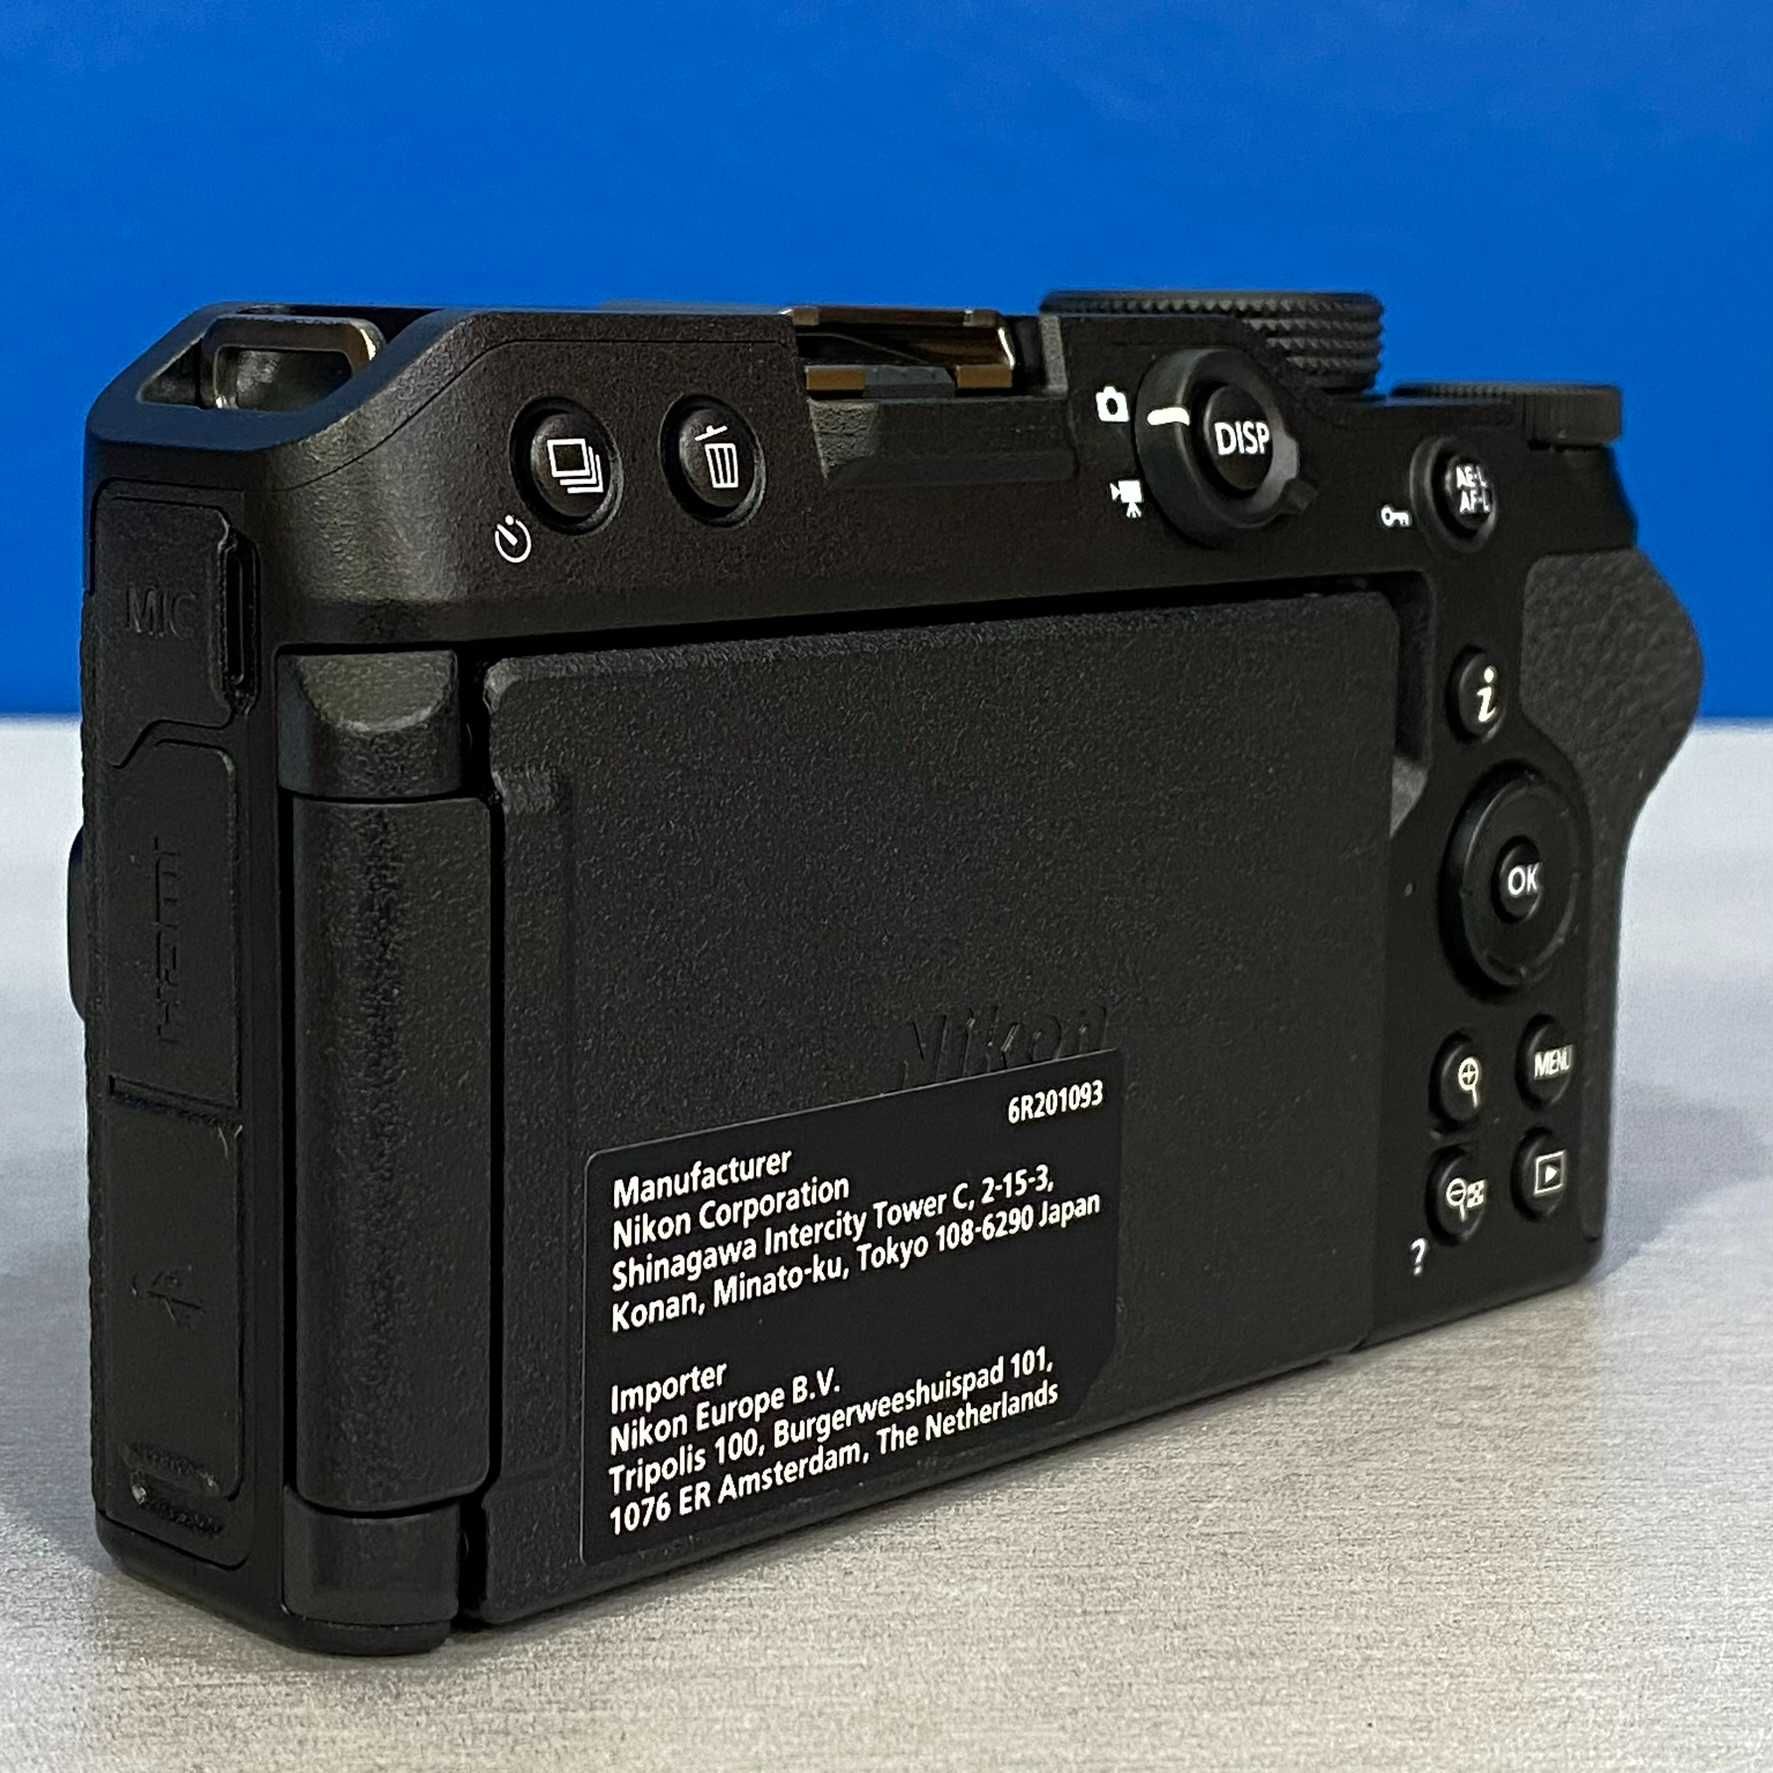 Nikon Z30 (Corpo) - 20.9MP - NOVA - 3 ANOS DE GARANTIA